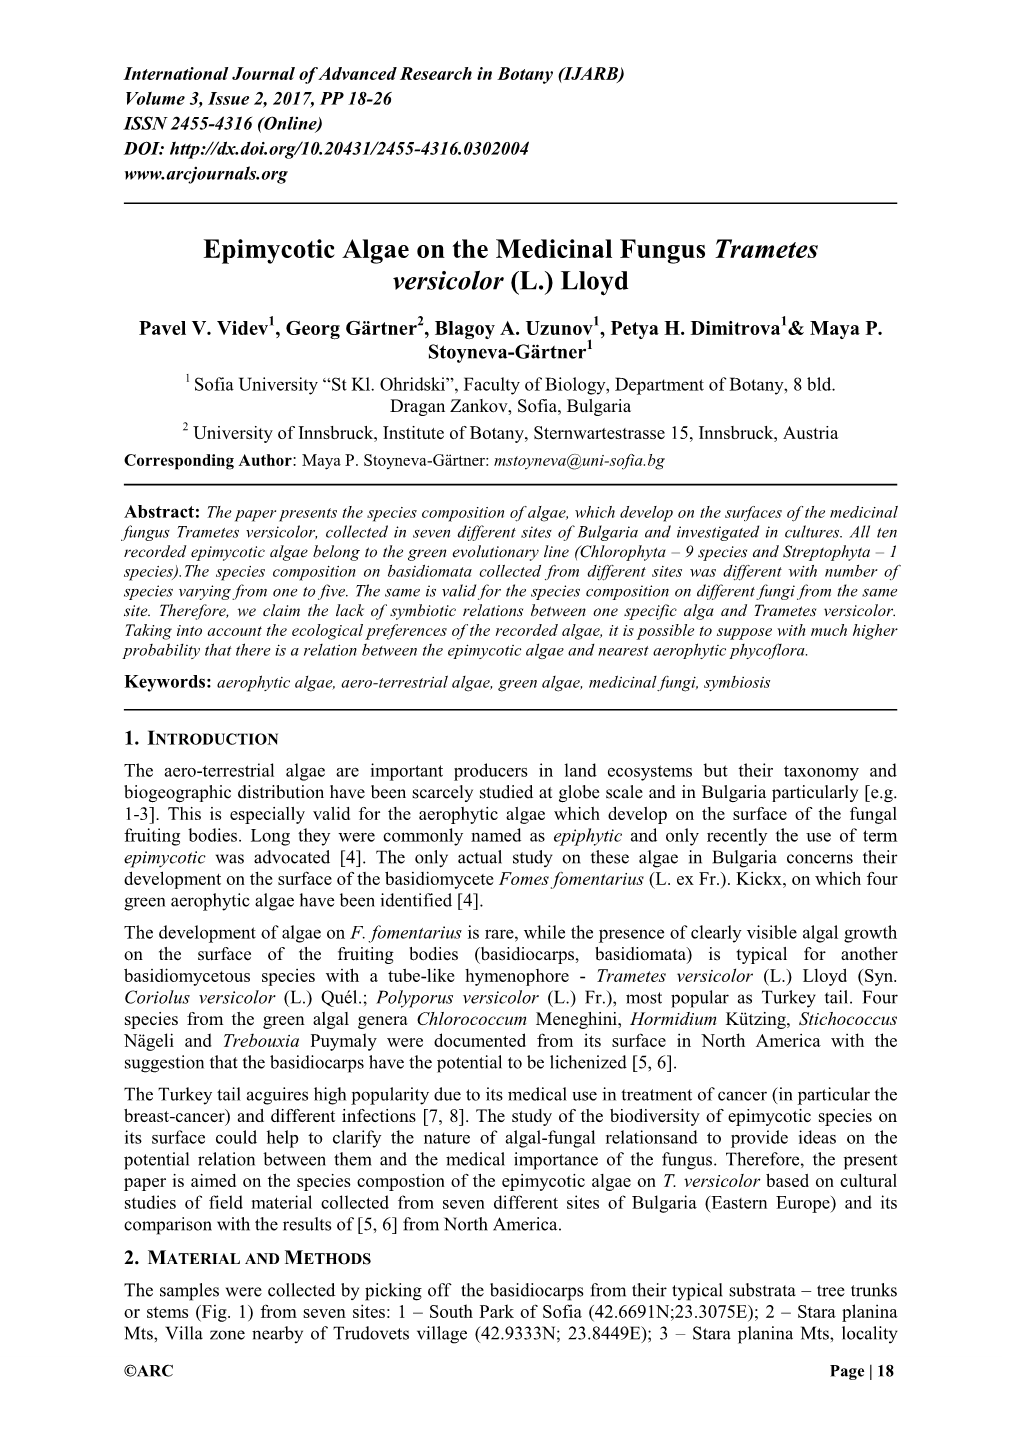 Epimycotic Algae on the Medicinal Fungus Trametes Versicolor (L.) Lloyd